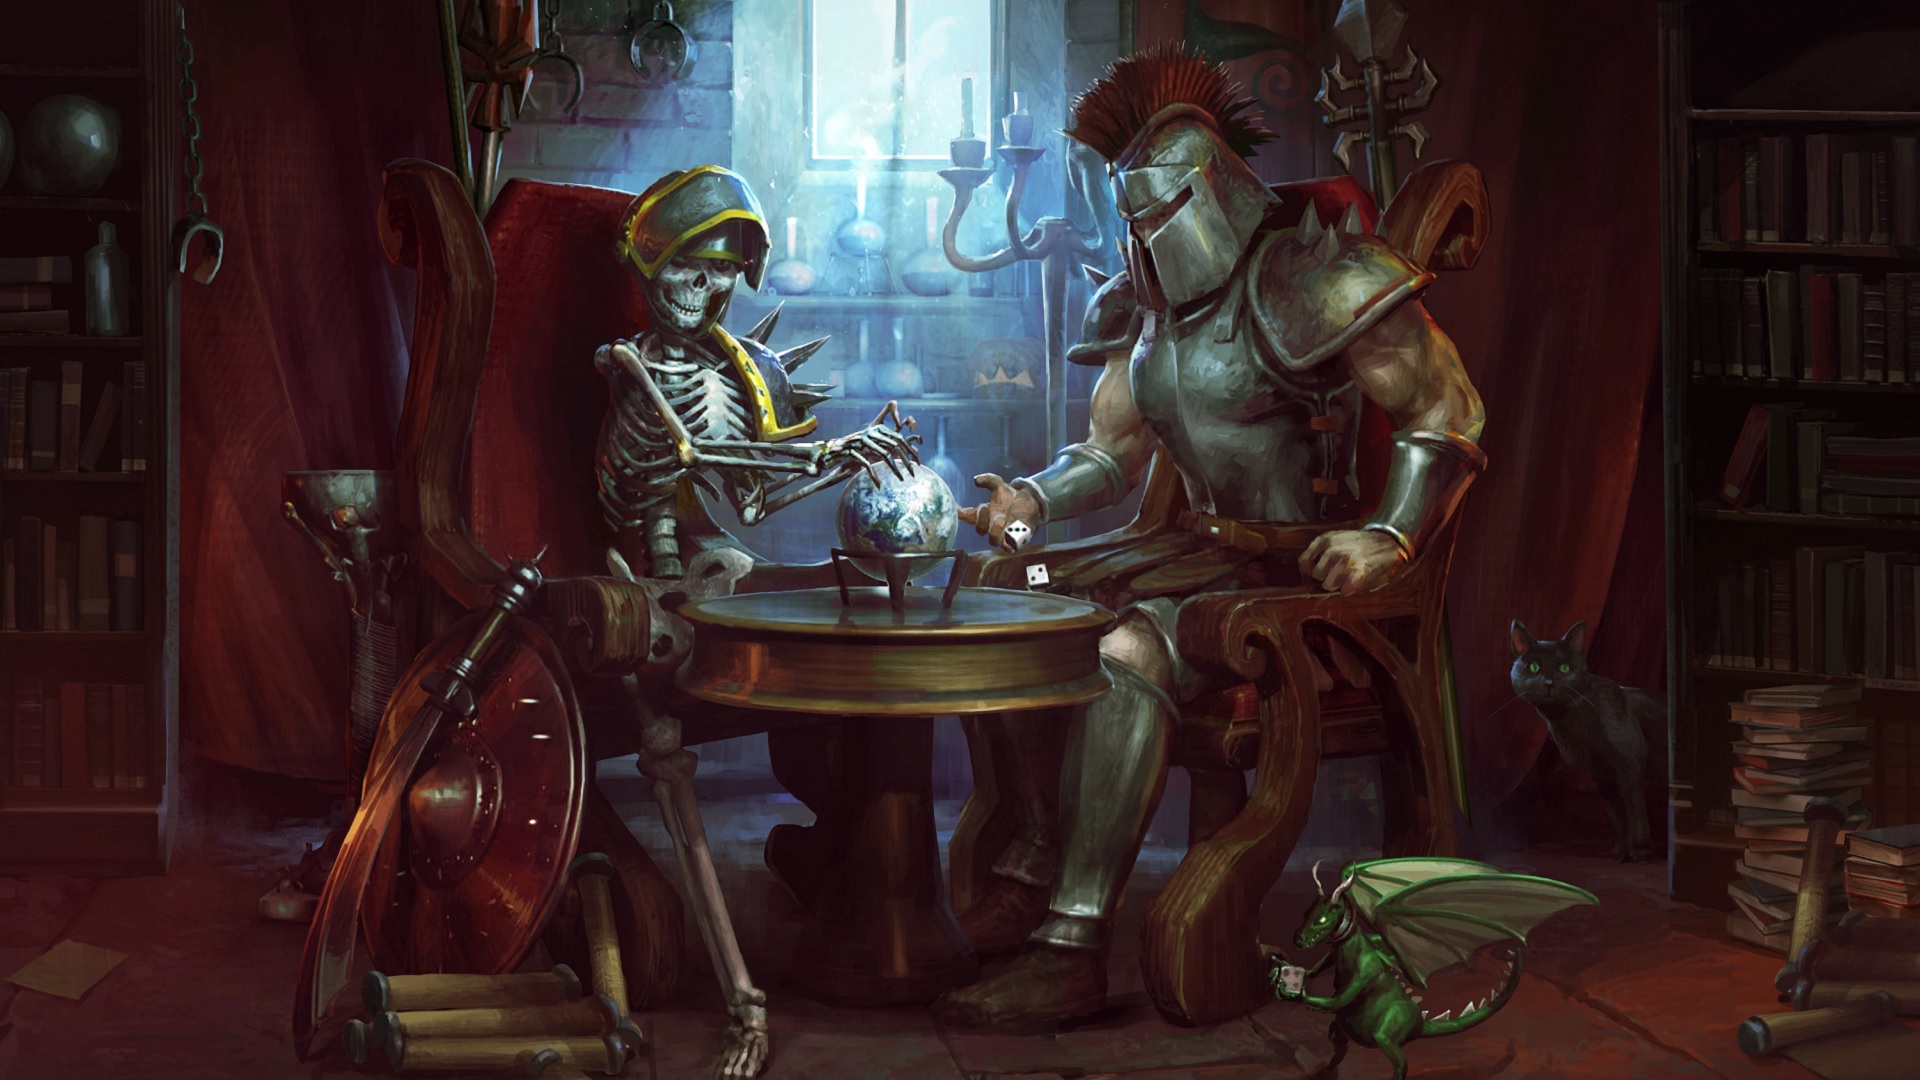 Los mejores juegos gratuitos para PC: Runescape. La imagen muestra a un caballero y un esqueleto juntos en una mesa. El esqueleto está vivo.